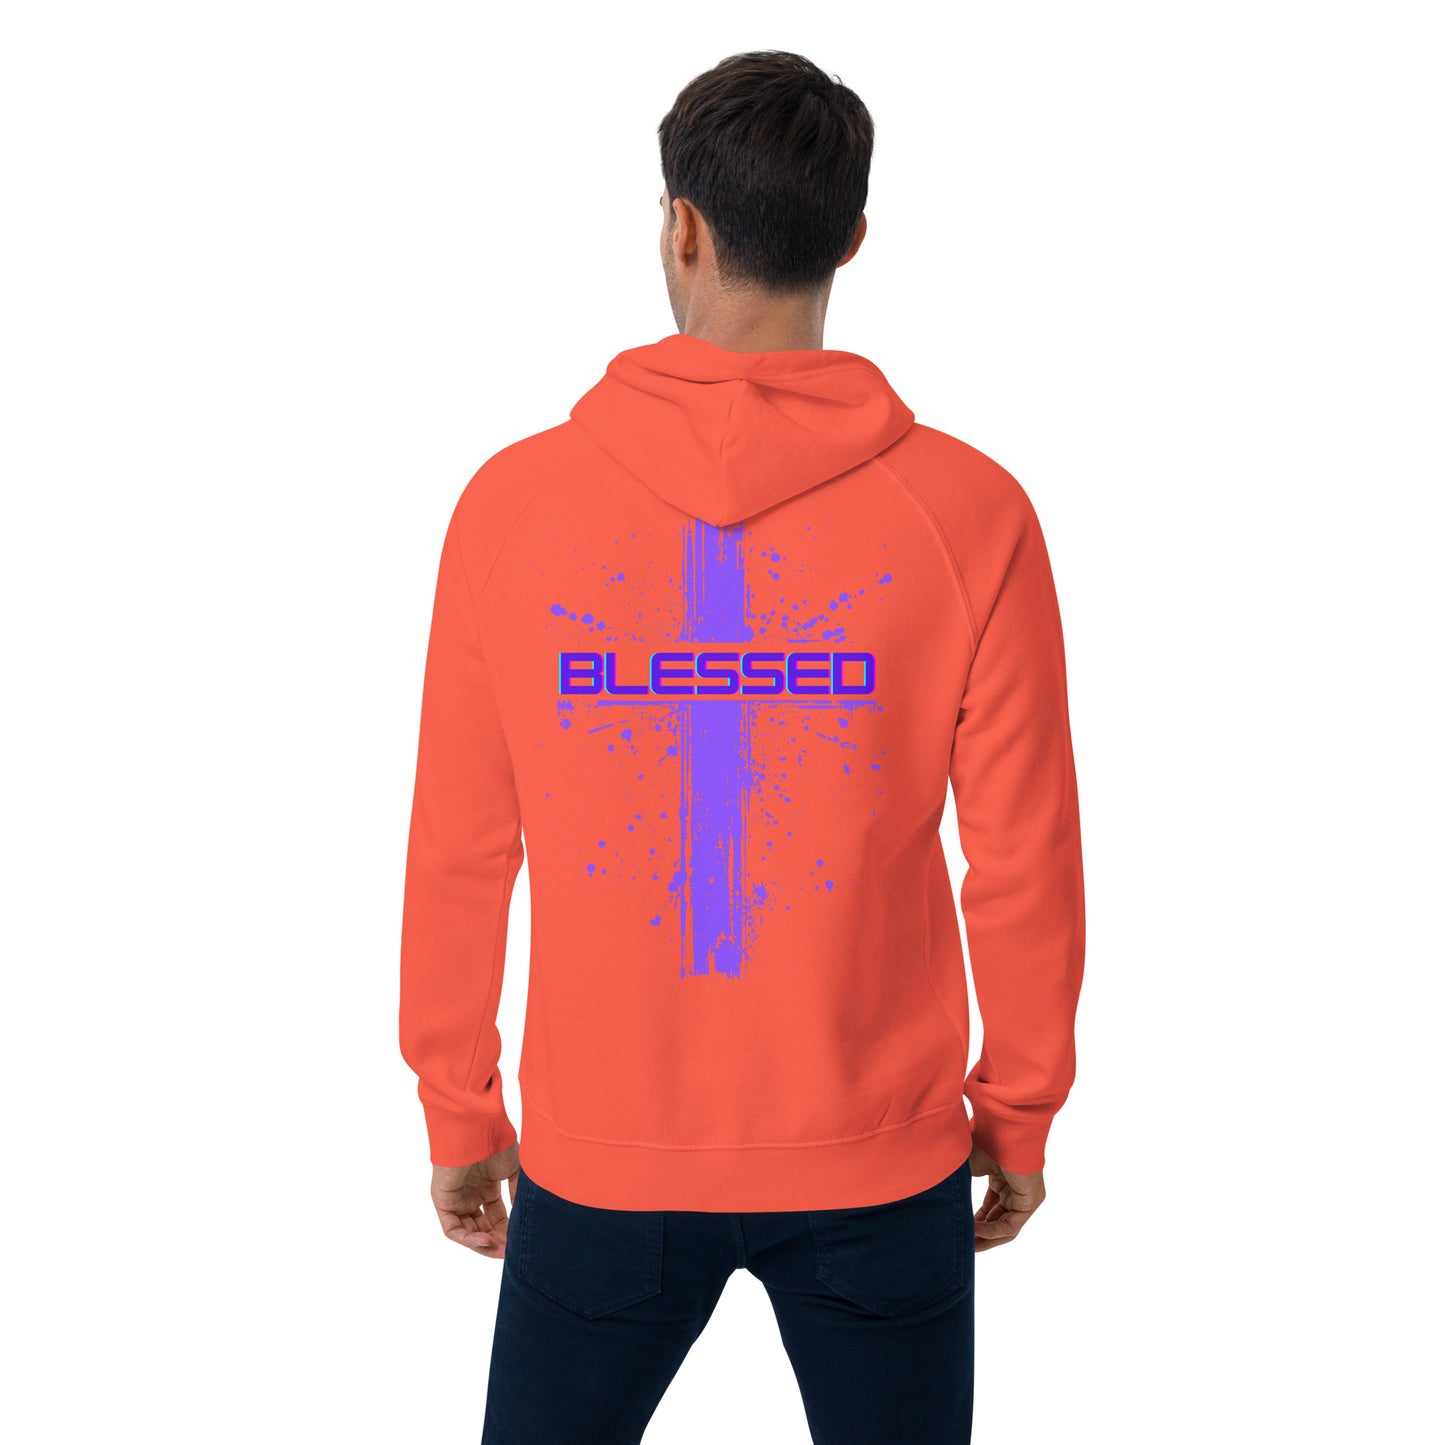 Blessed purple cross Unisex eco raglan hoodie